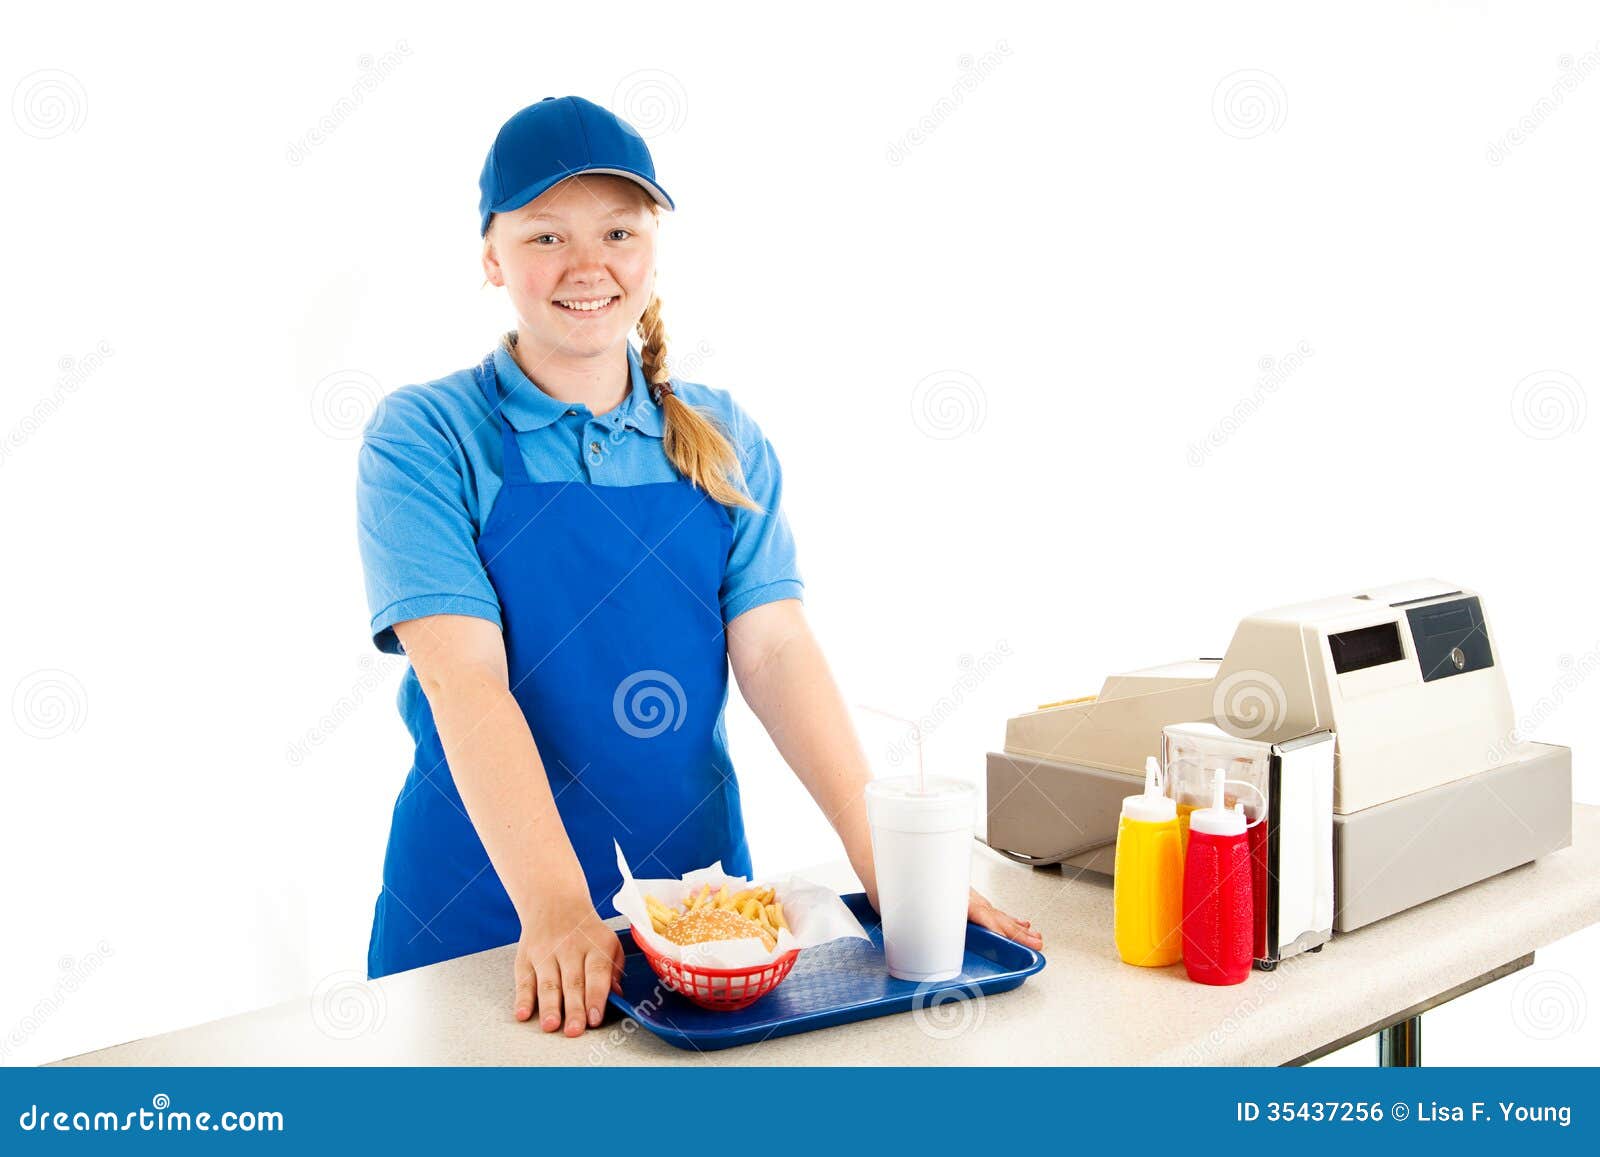 teen fast food workers